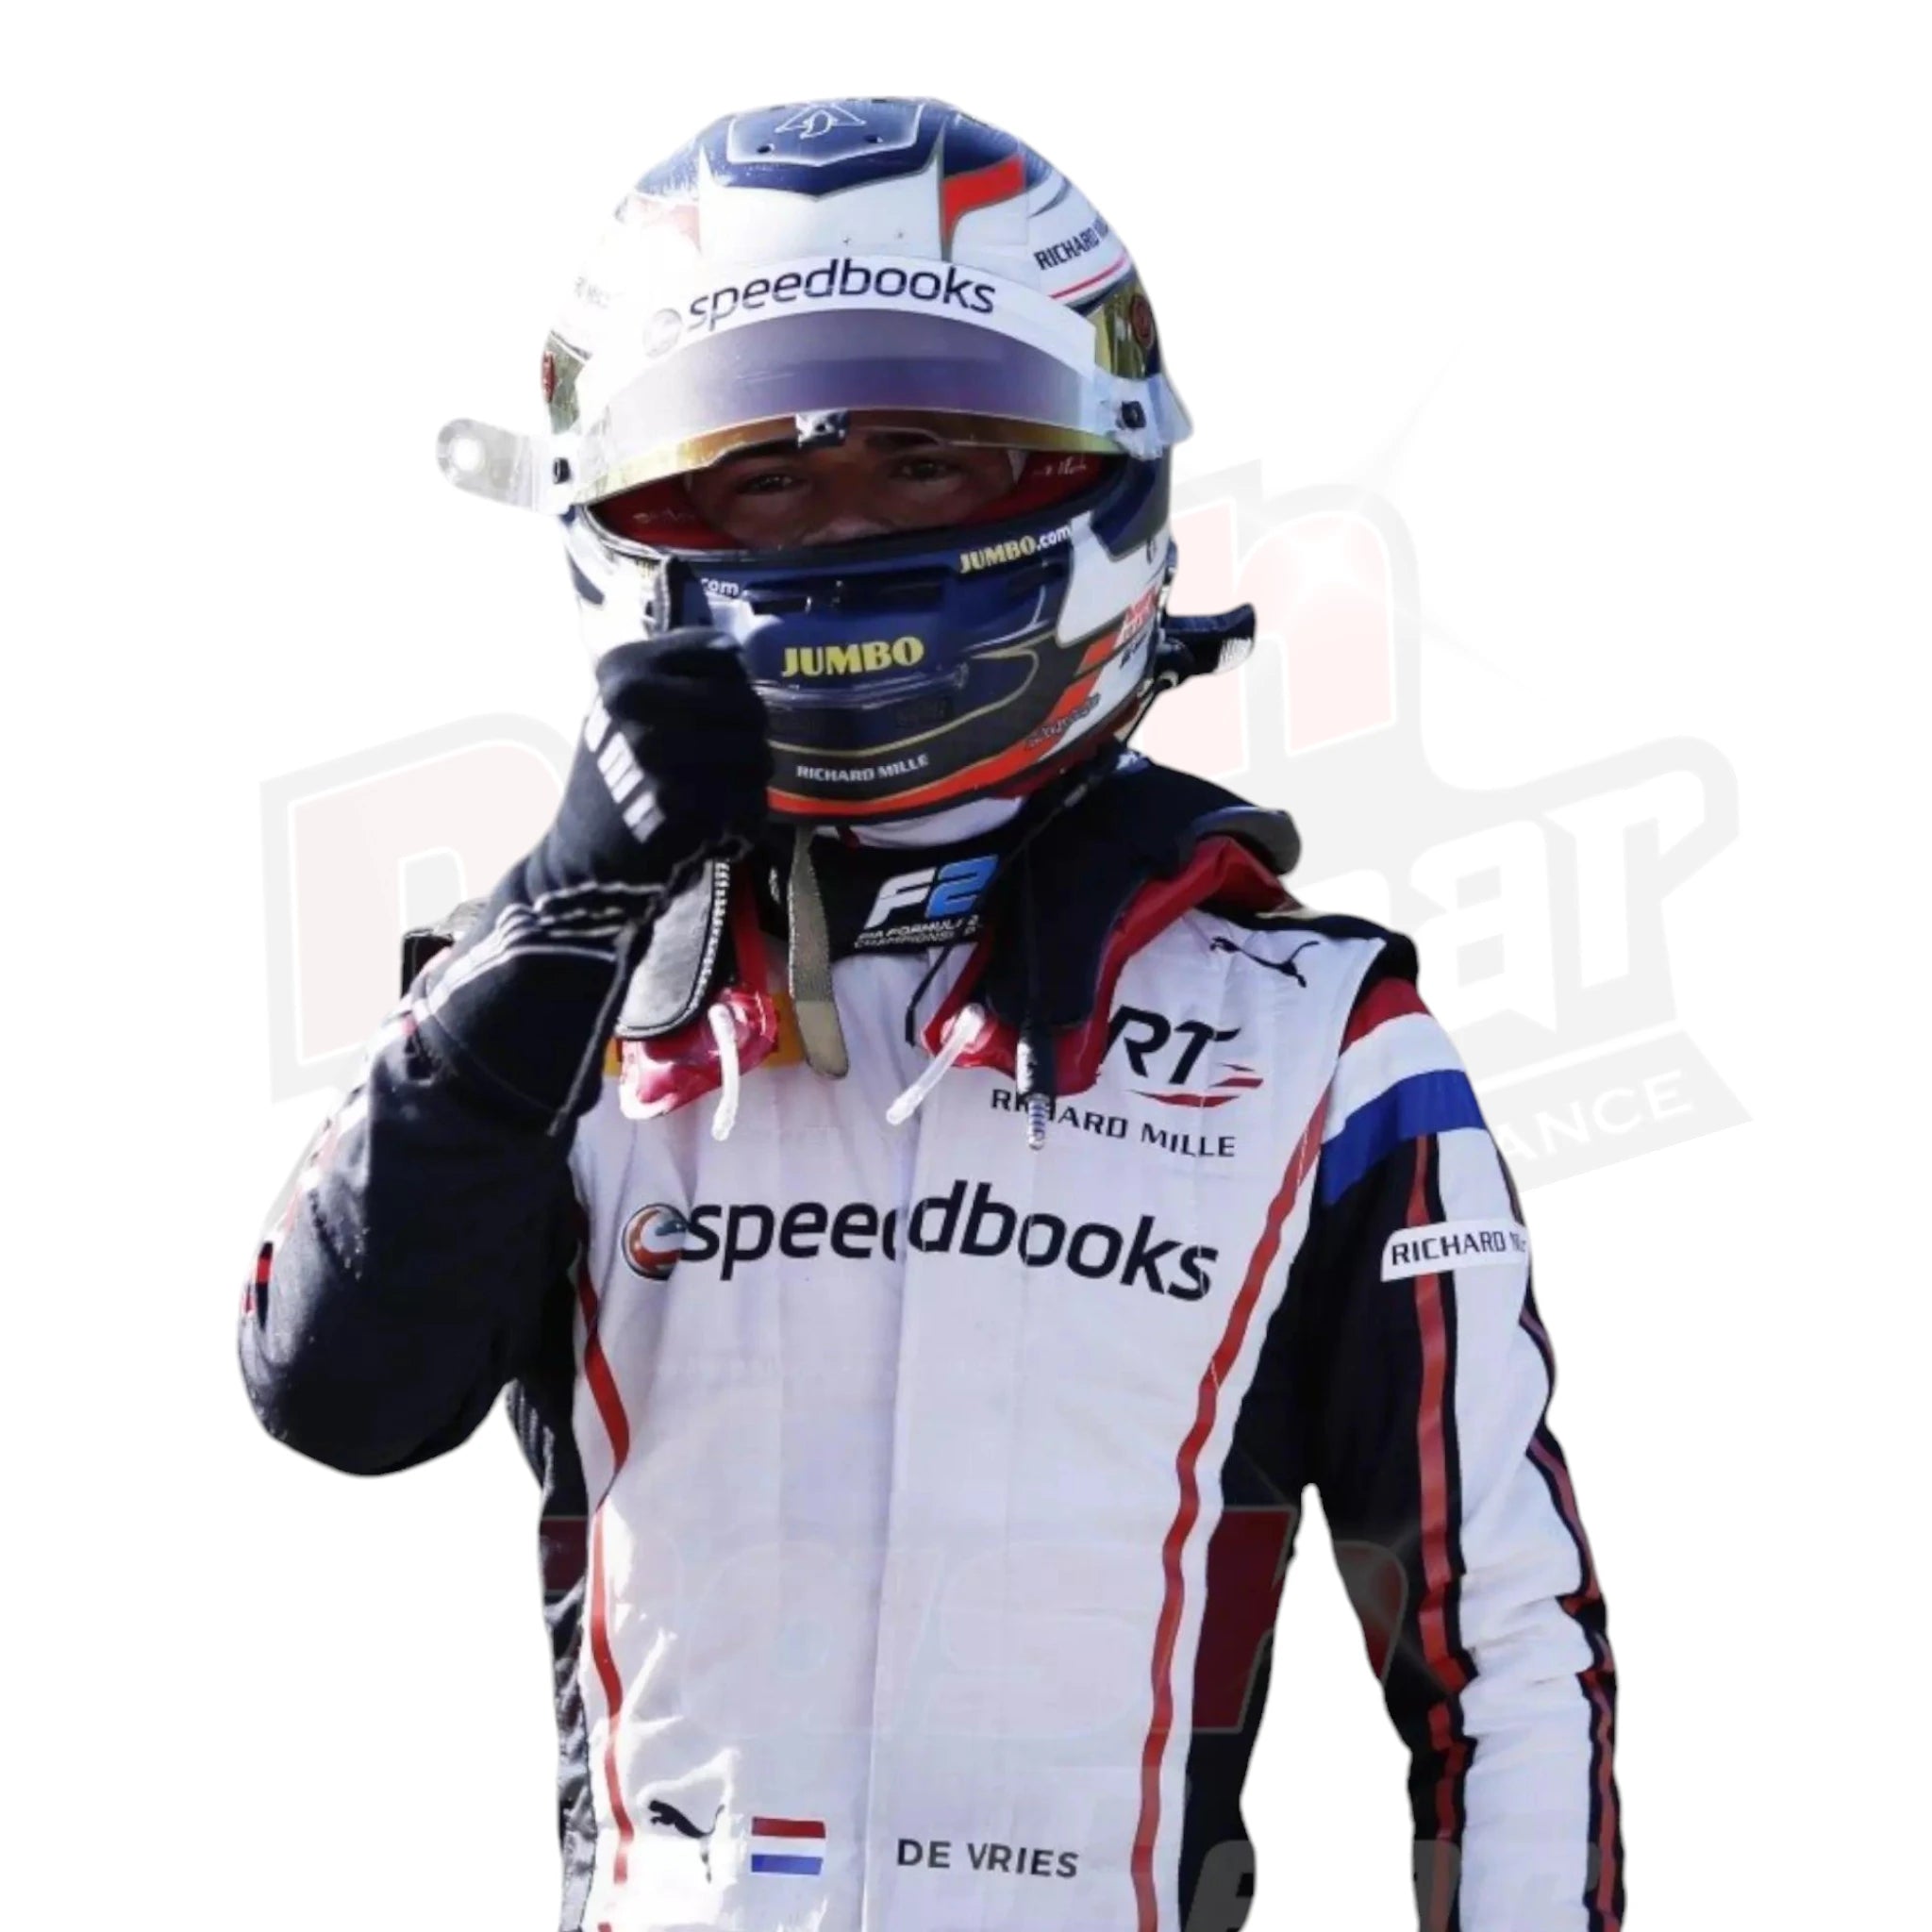 2019 Nyck de Vries F2 Race Suit